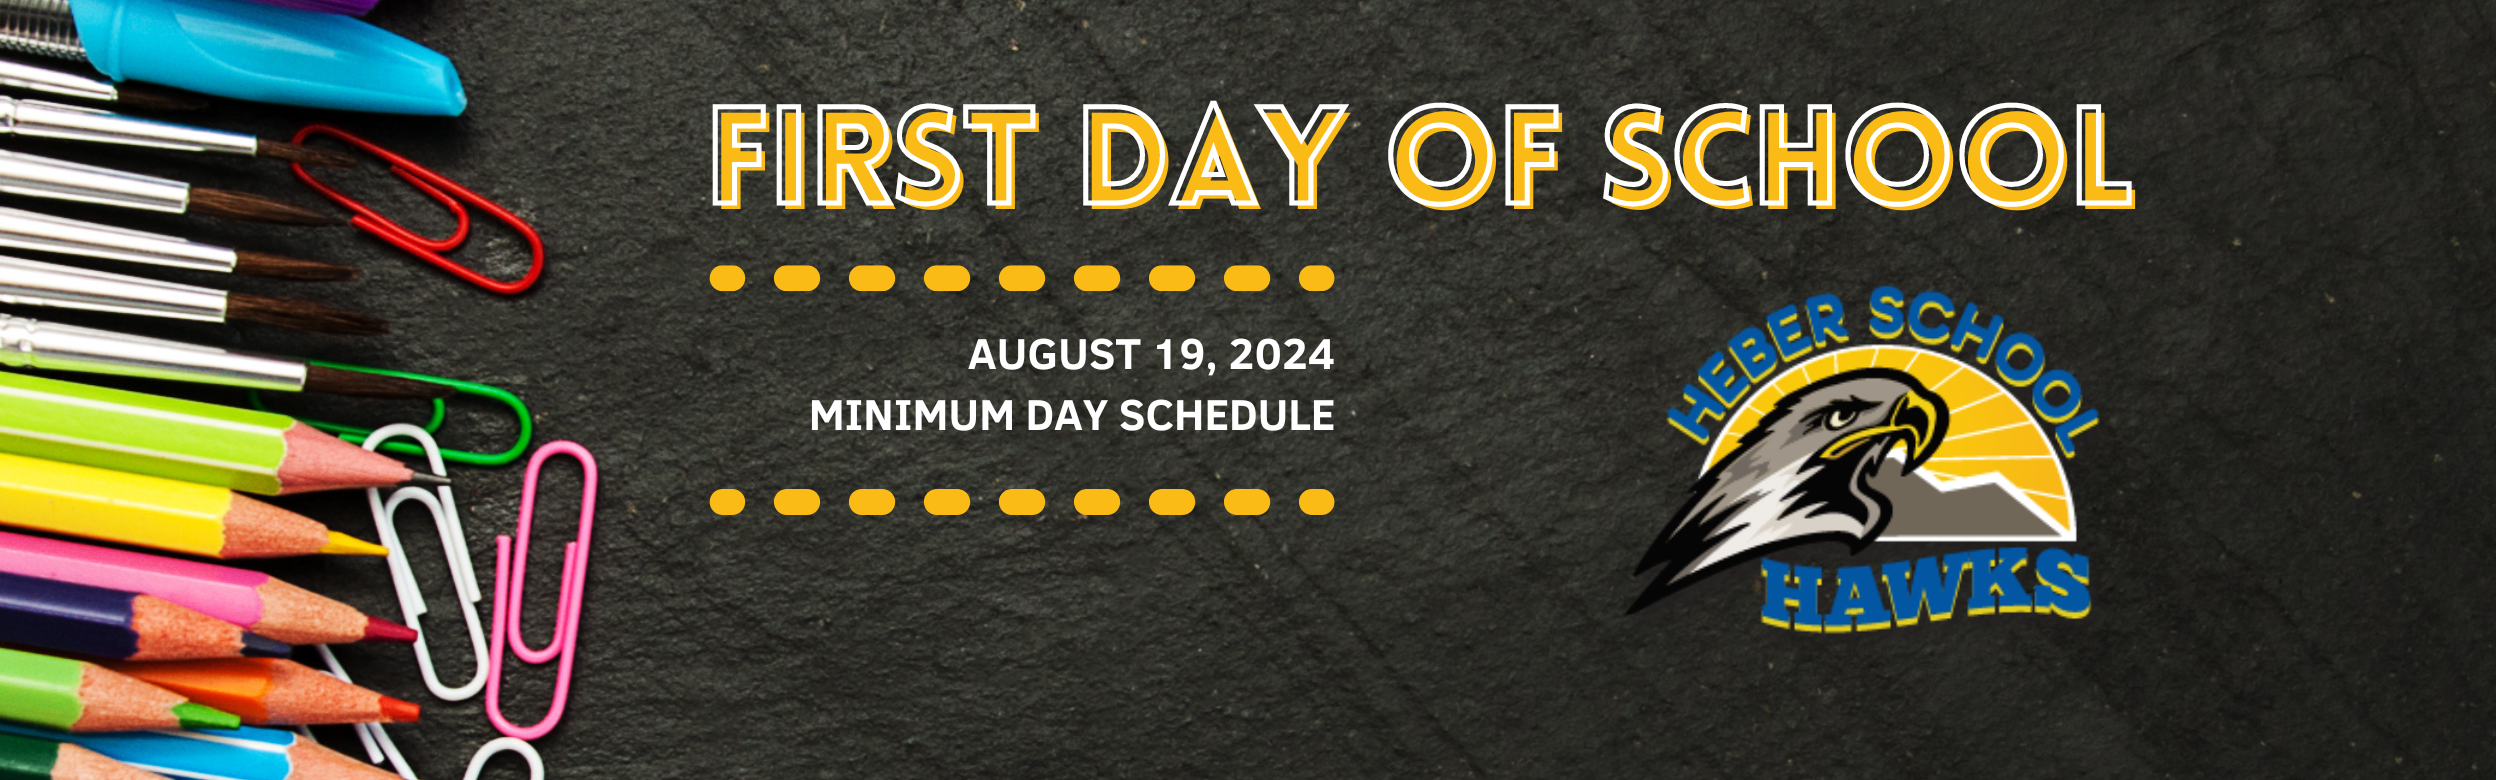 First Day of School, August 19, 2024. Minimum Day Schedule.